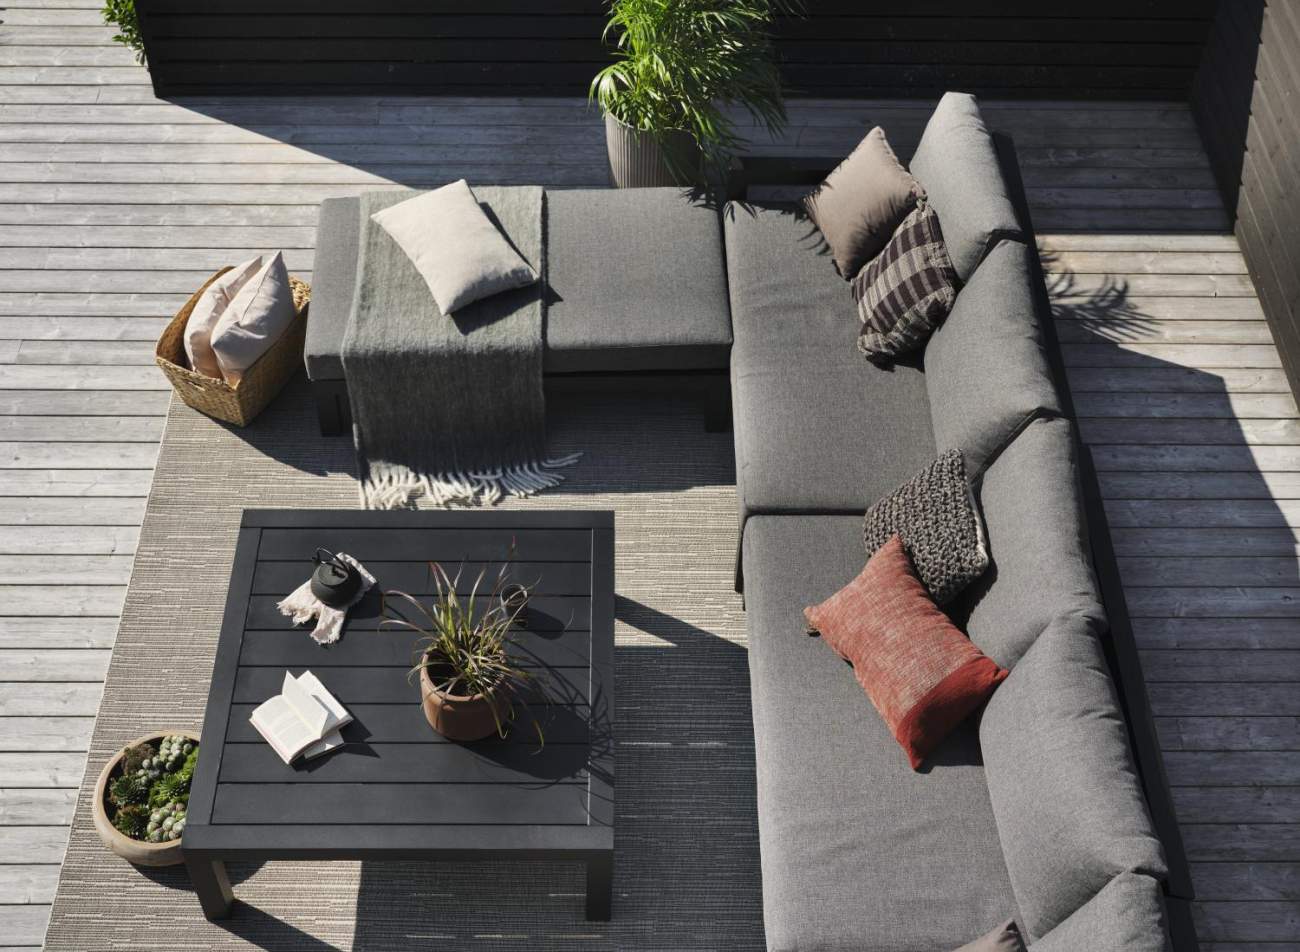 Der Gartenteppich Amarante überzeugt mit seinem modernen Design. Gefertigt wurde er aus Webstoff, welcher einen grauen Farbton besitzt. Der Teppich hat eine Größe von 160x230 cm.